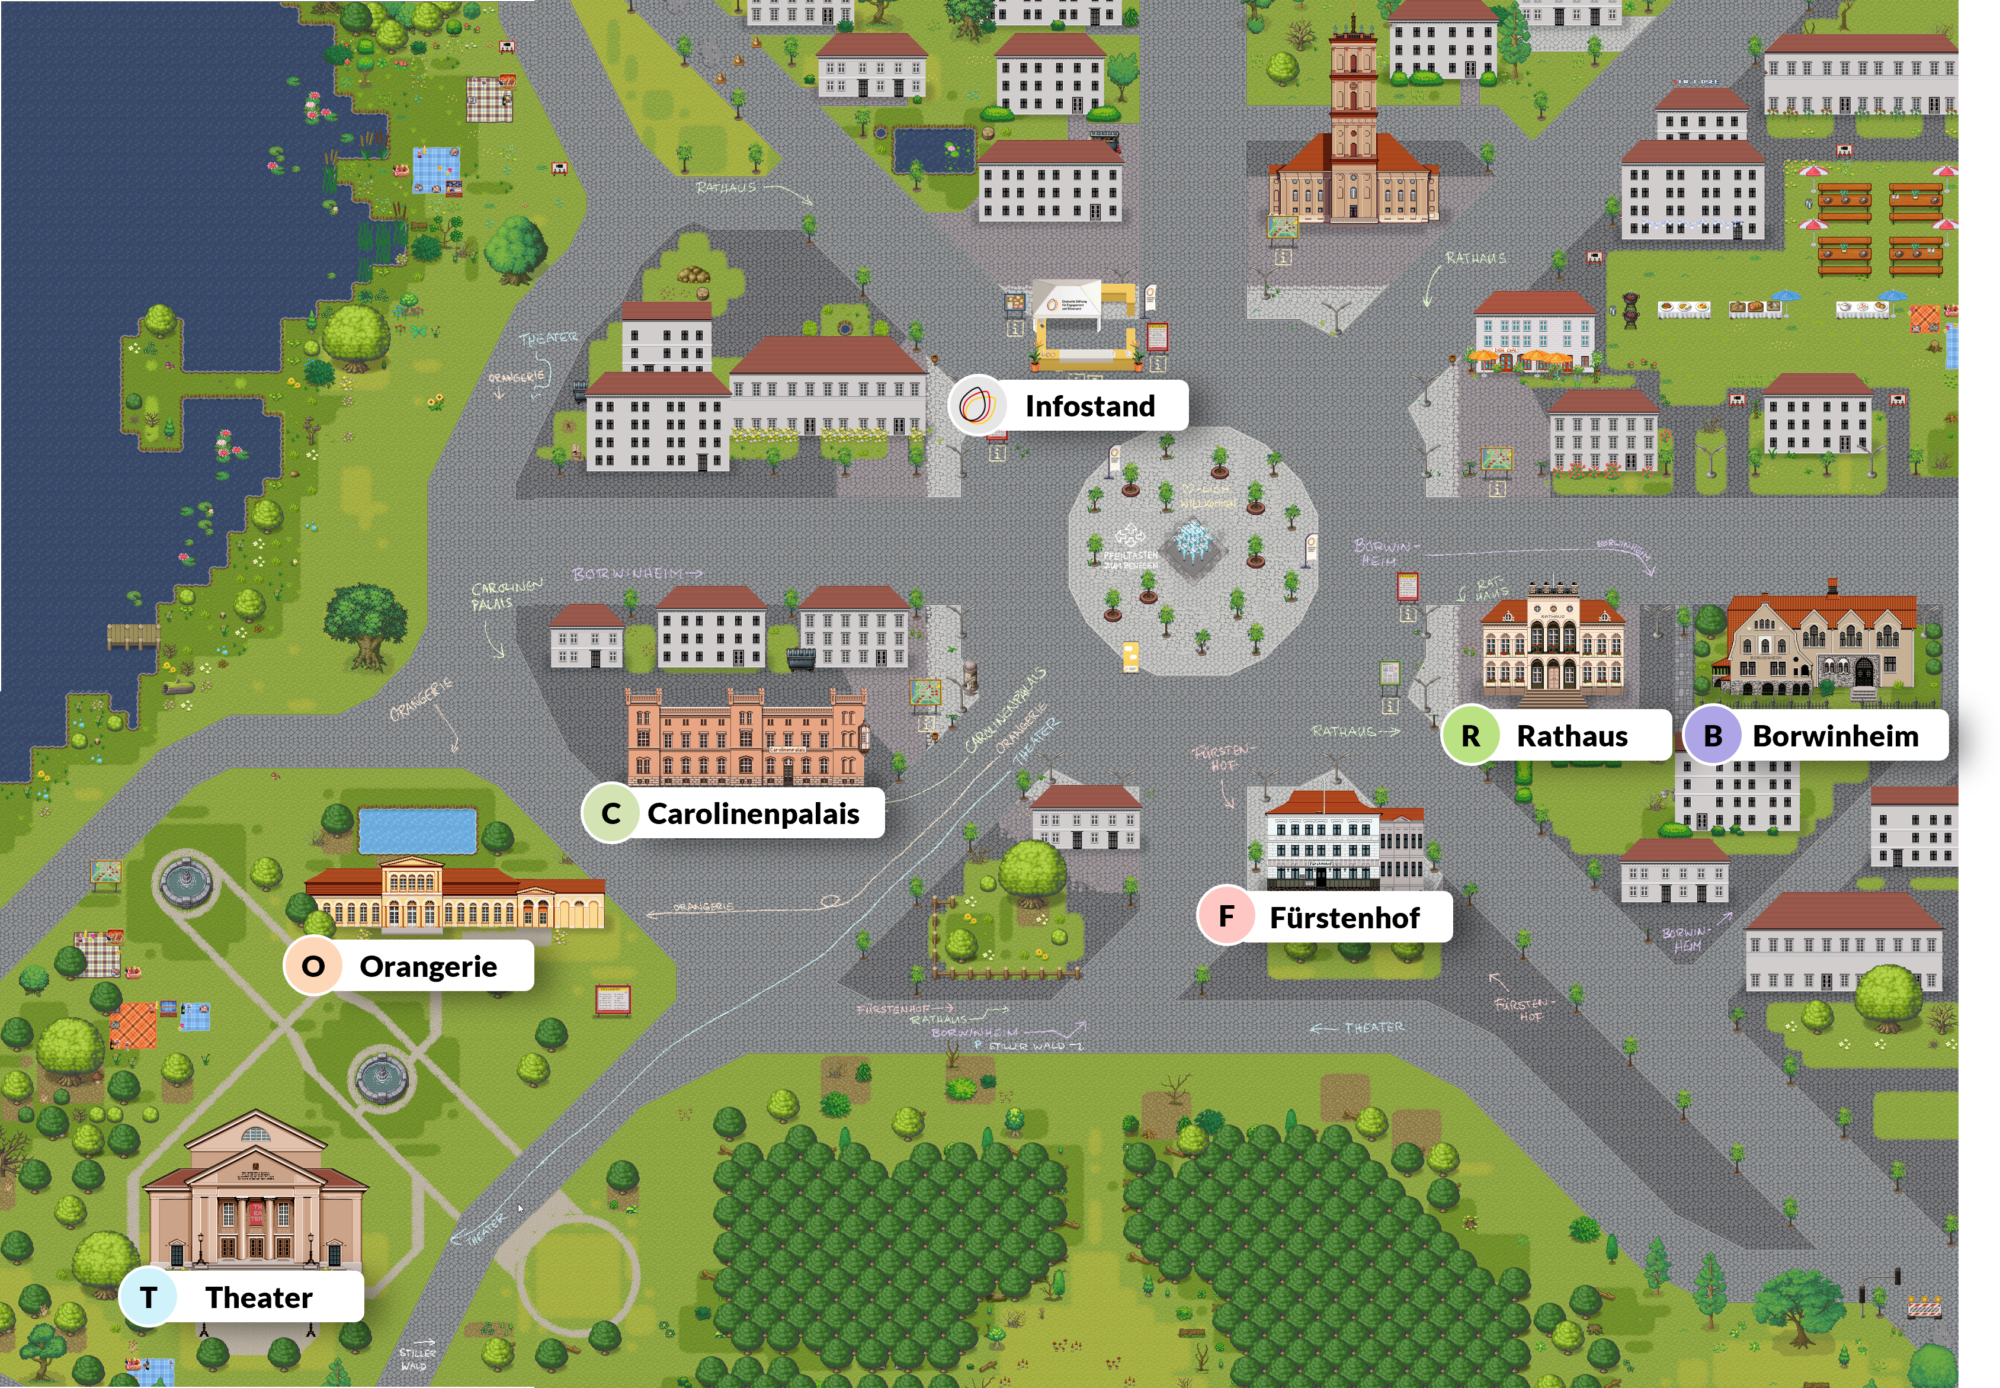 Screenshot mit einem Lageplan des Digitalen Neustrelitz in Retro-Spiele-Grafik. Zu sehen ist der Marktplatz mit einigen Gebäude darum gruppiert, so z. B. ein Infostand, das Rathaus, die Orangerie und das Theater.